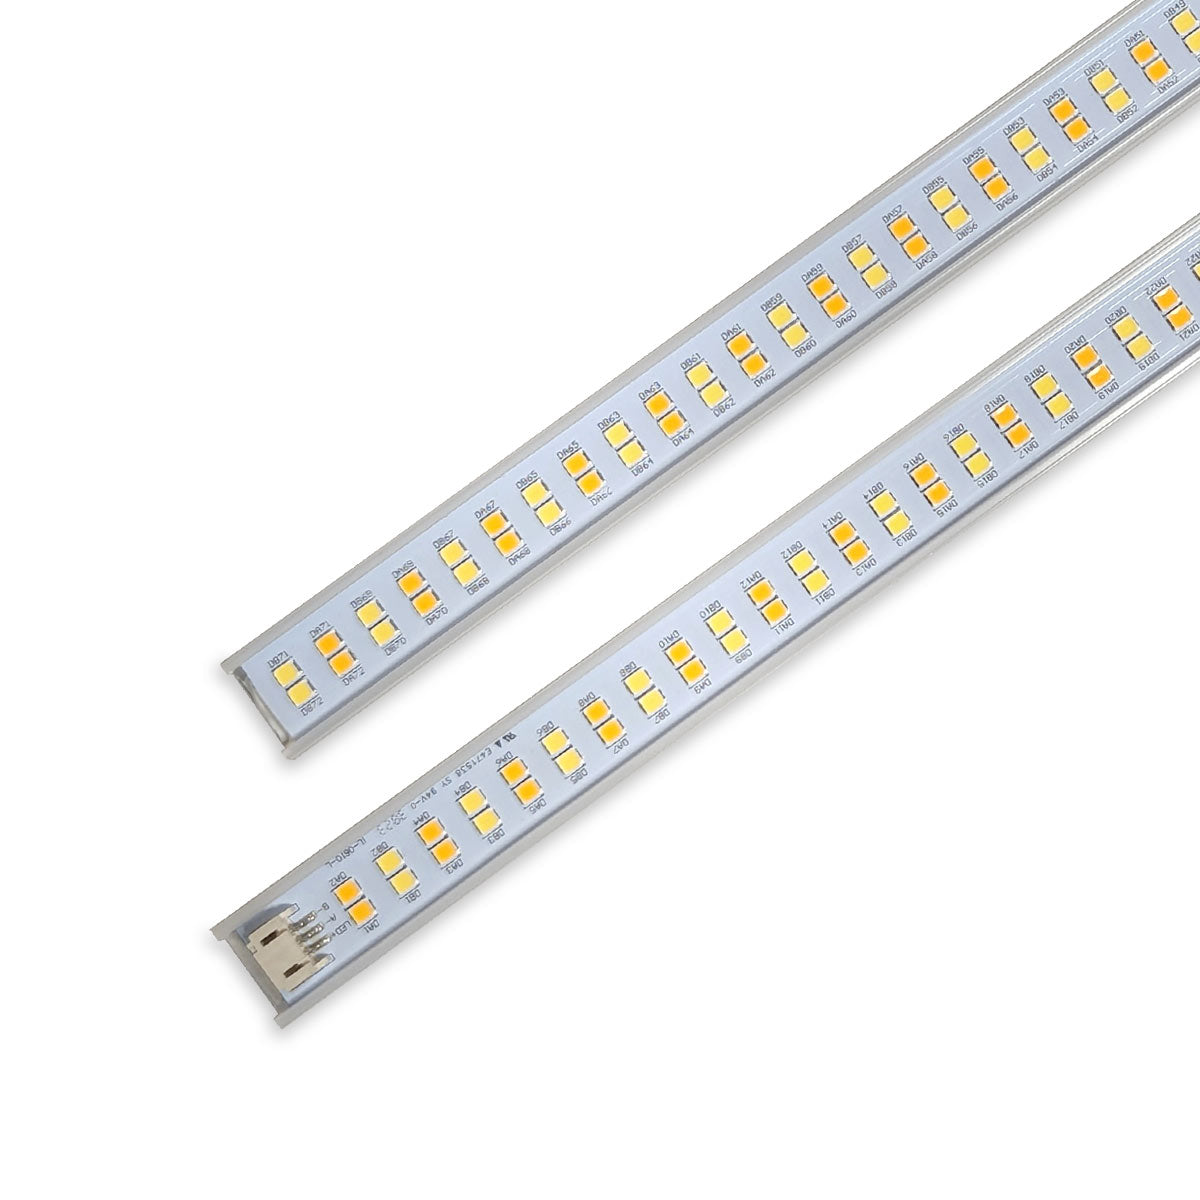 MSK Series LED Linear Retrofit Kit